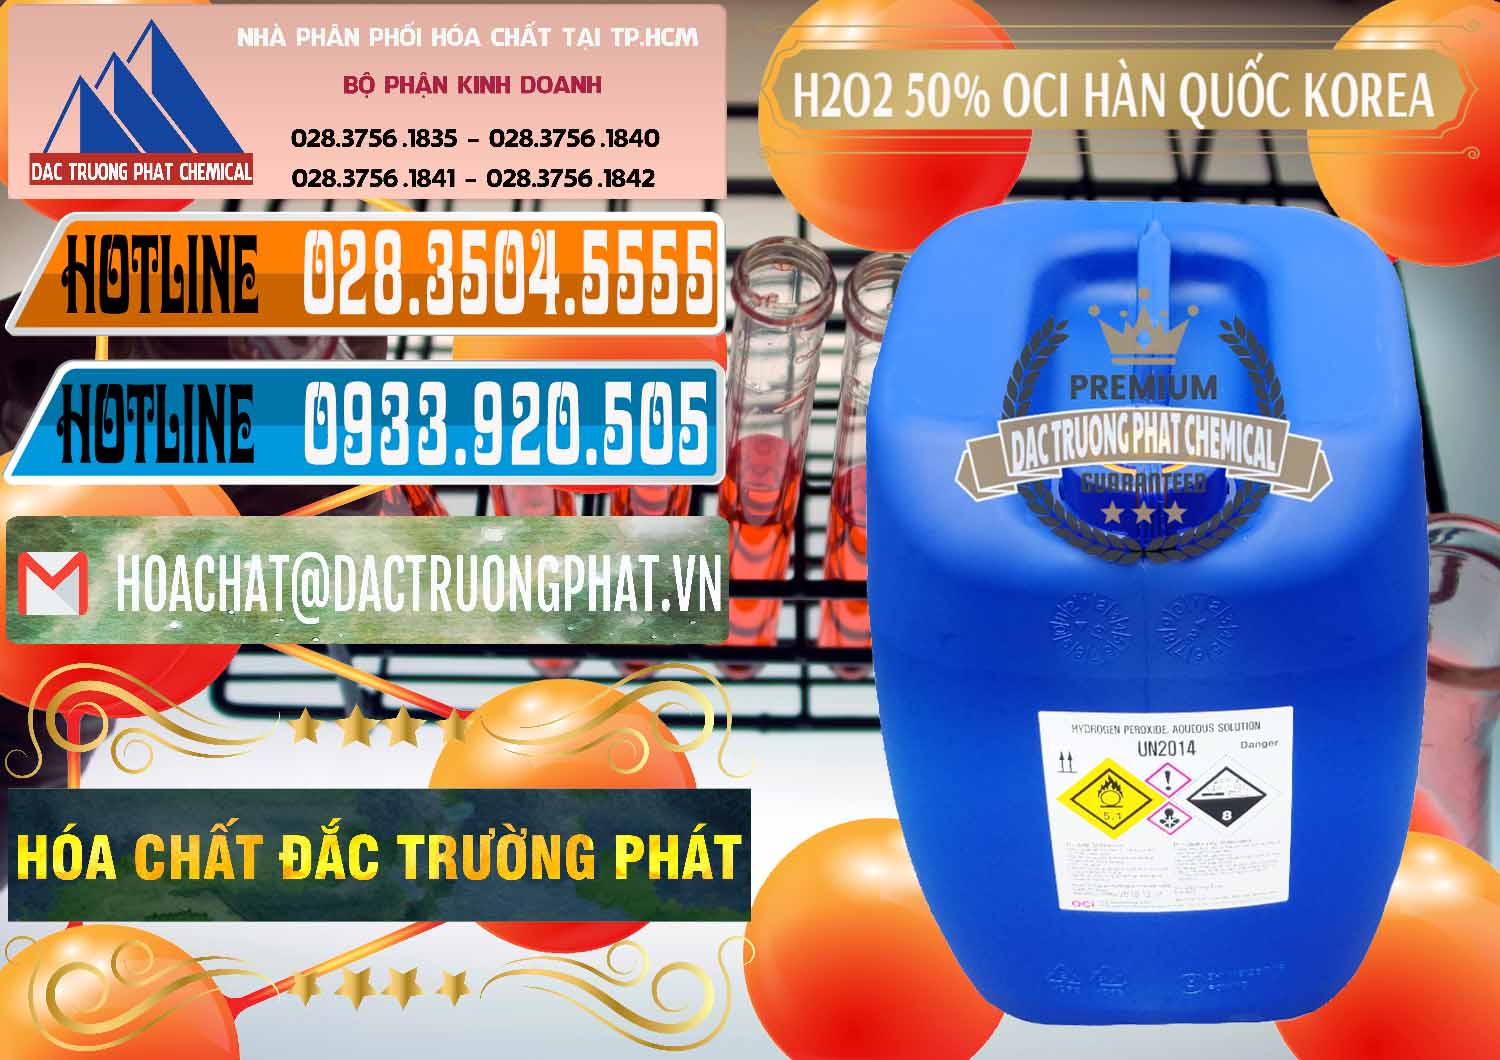 Đơn vị bán & cung cấp H2O2 - Hydrogen Peroxide 50% OCI Hàn Quốc Korea - 0075 - Nhà nhập khẩu _ phân phối hóa chất tại TP.HCM - stmp.net